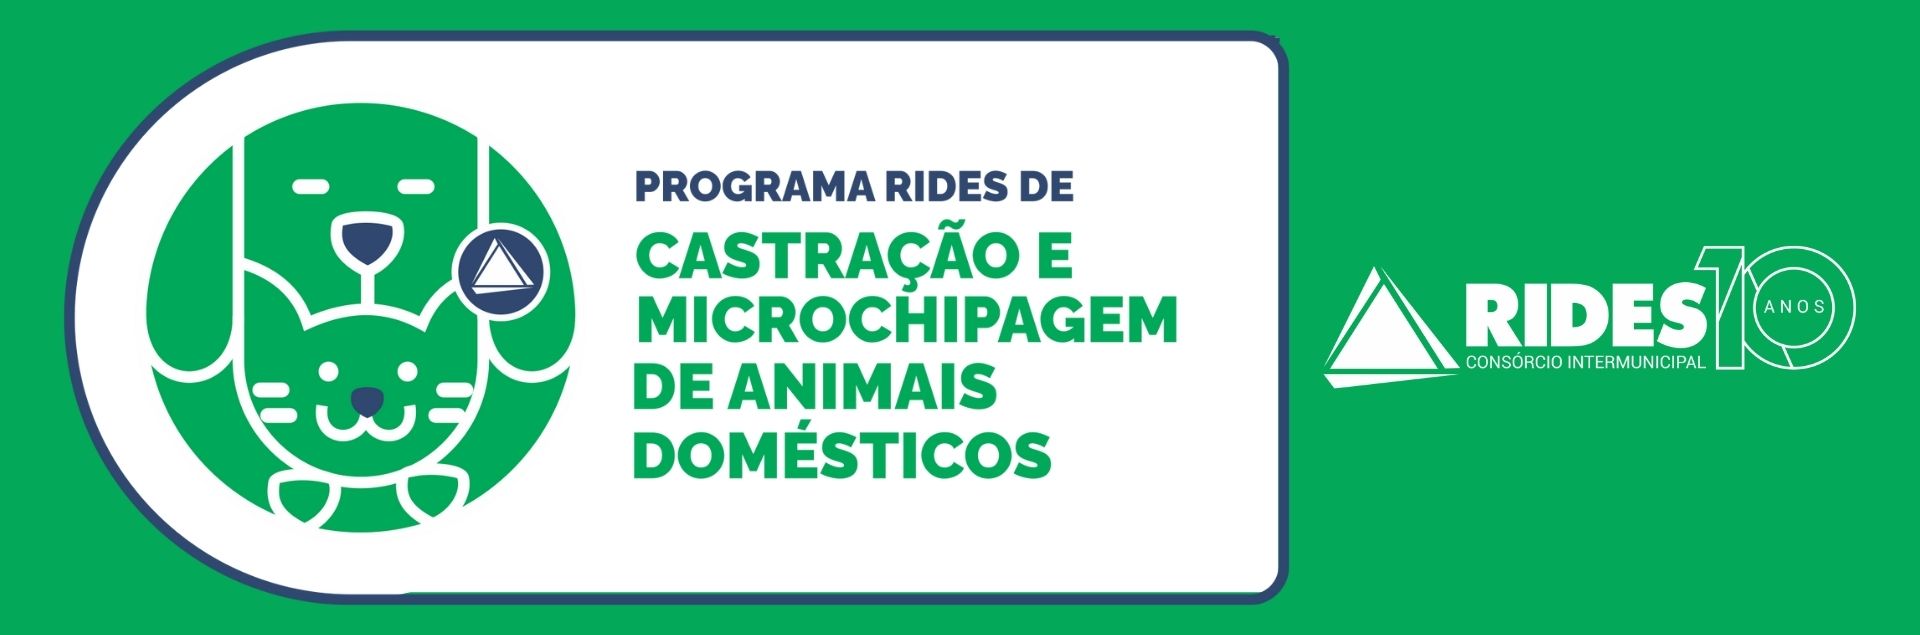 Programa RIDES de Castração e Microchipagem de Animais Domésticos